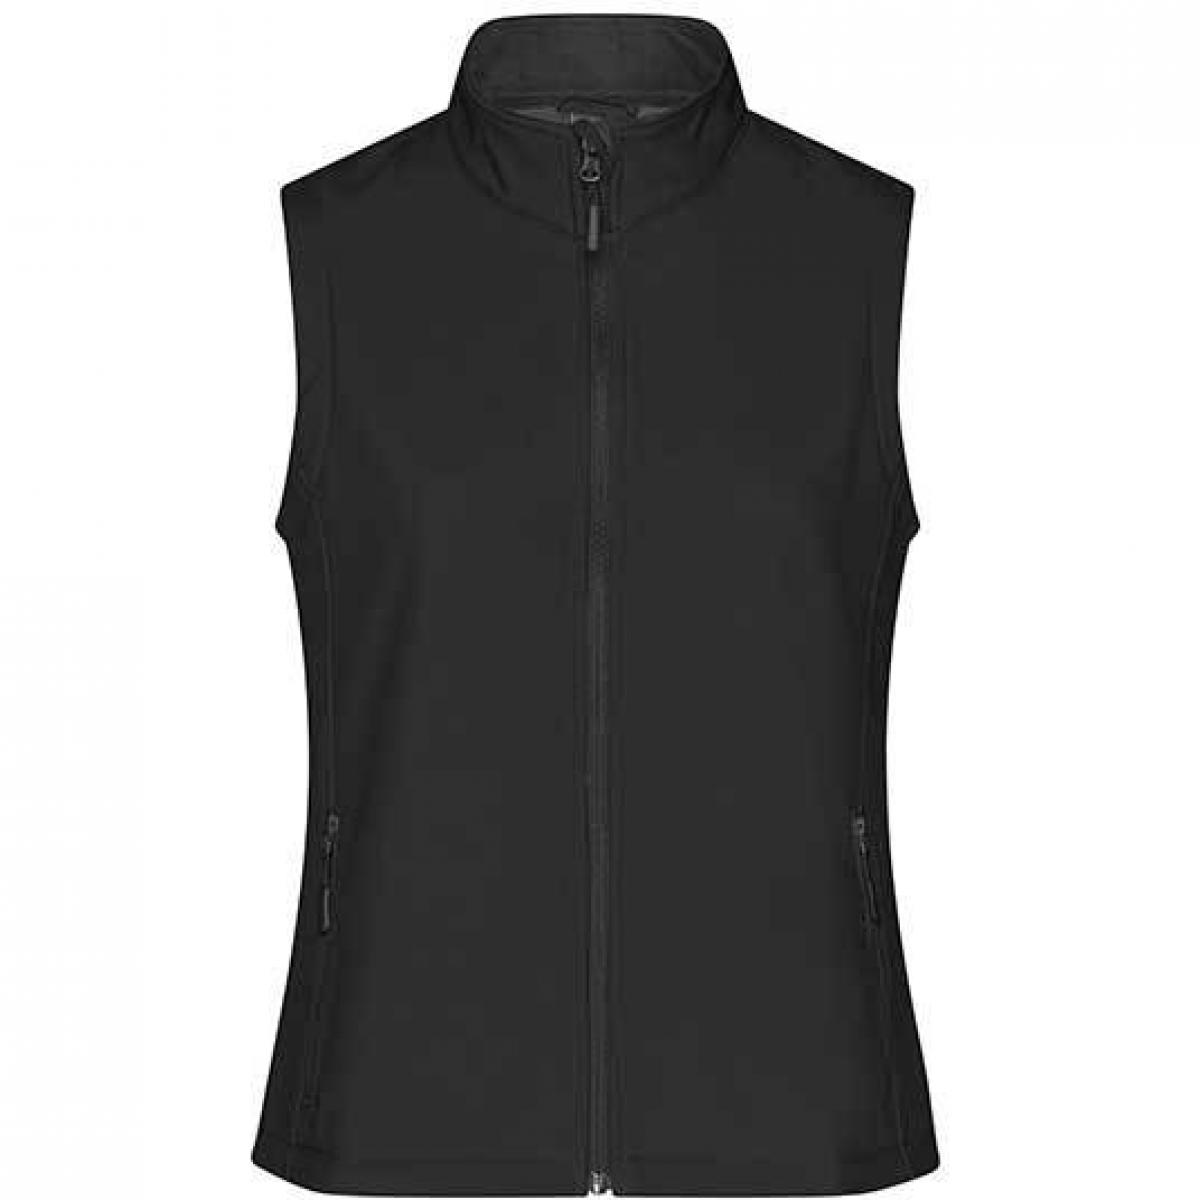 Hersteller: James+Nicholson Herstellernummer: JN1127 Artikelbezeichnung: Damen Promo Softshell Vest / Wasserabweisend, winddicht Farbe: Black/Black